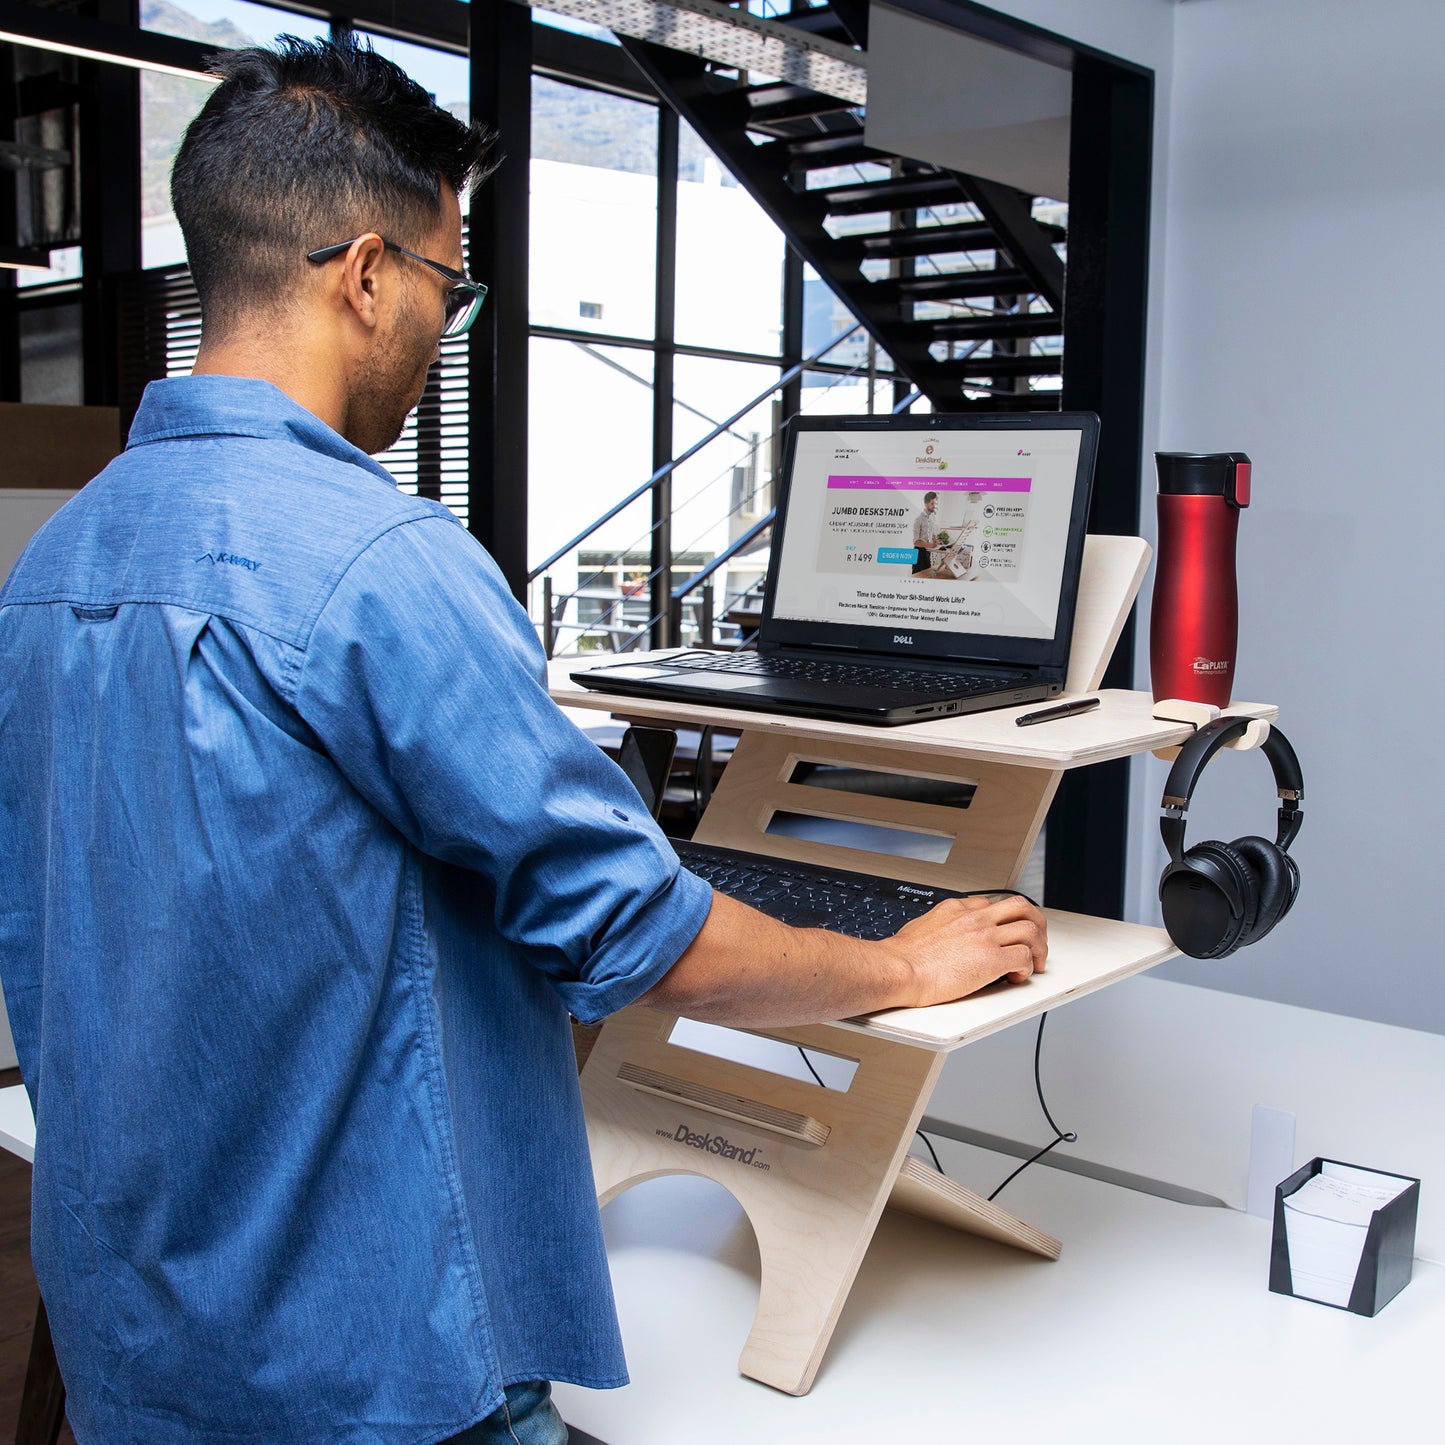 JUMBO DeskStand - Adjustable Standing Desk - home • office • health